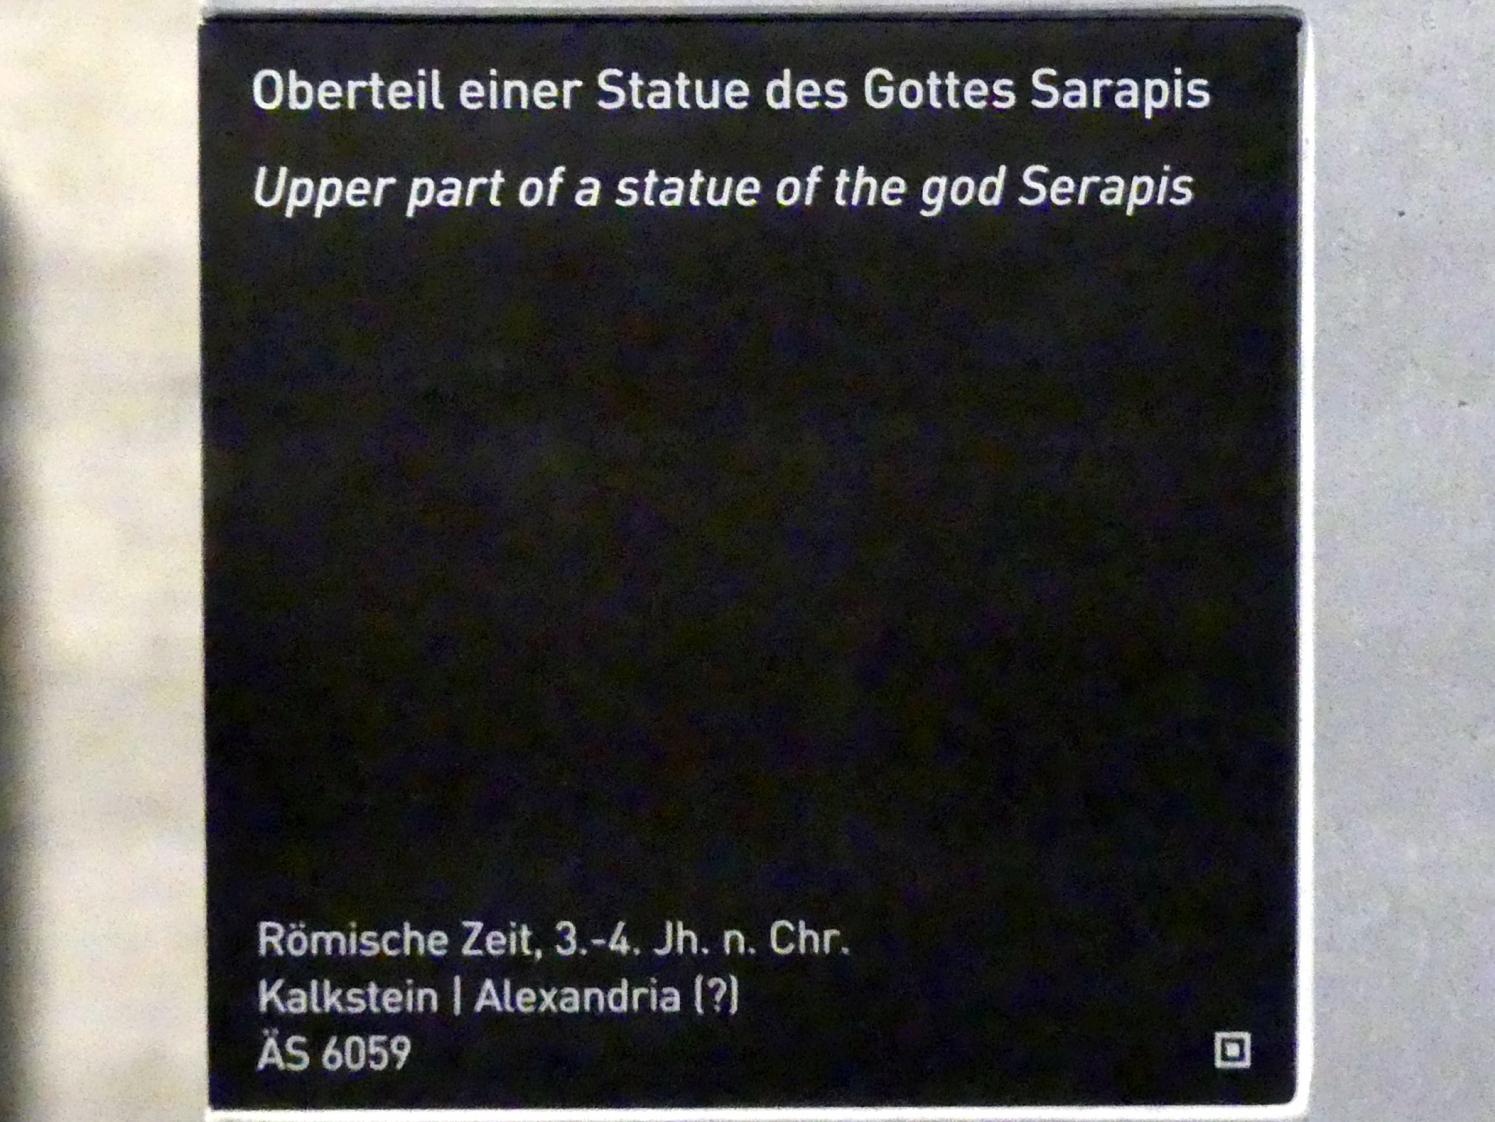 Oberteil einer Statue des Gottes Serapis, Römische Kaiserzeit, 27 v. Chr. - 54 n. Chr., 300 - 500, Bild 2/2